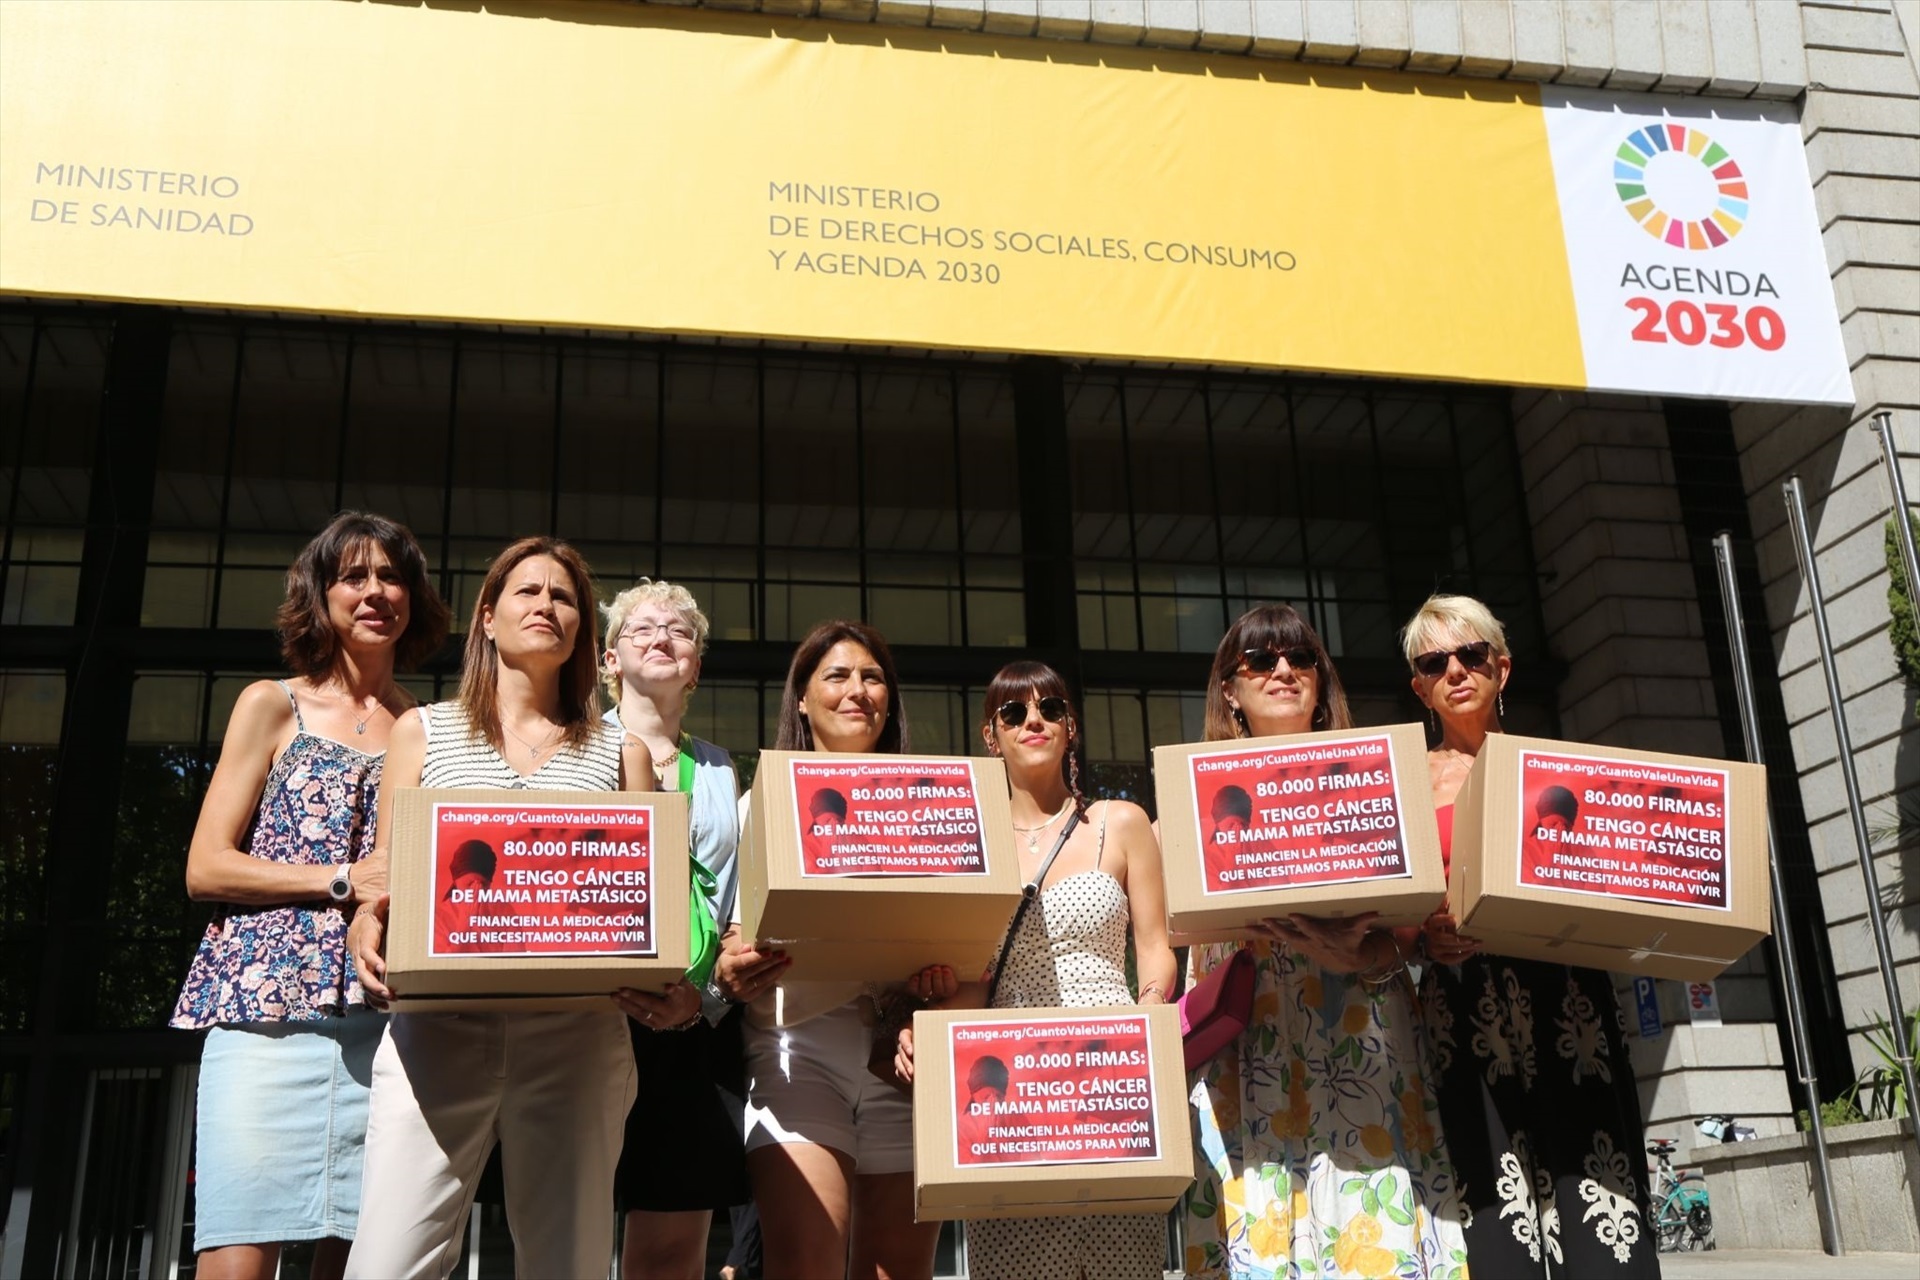 El mensaje de pacientes de cáncer de mama metastásico a Mónica García: "No tenemos tiempo, nos morimos"